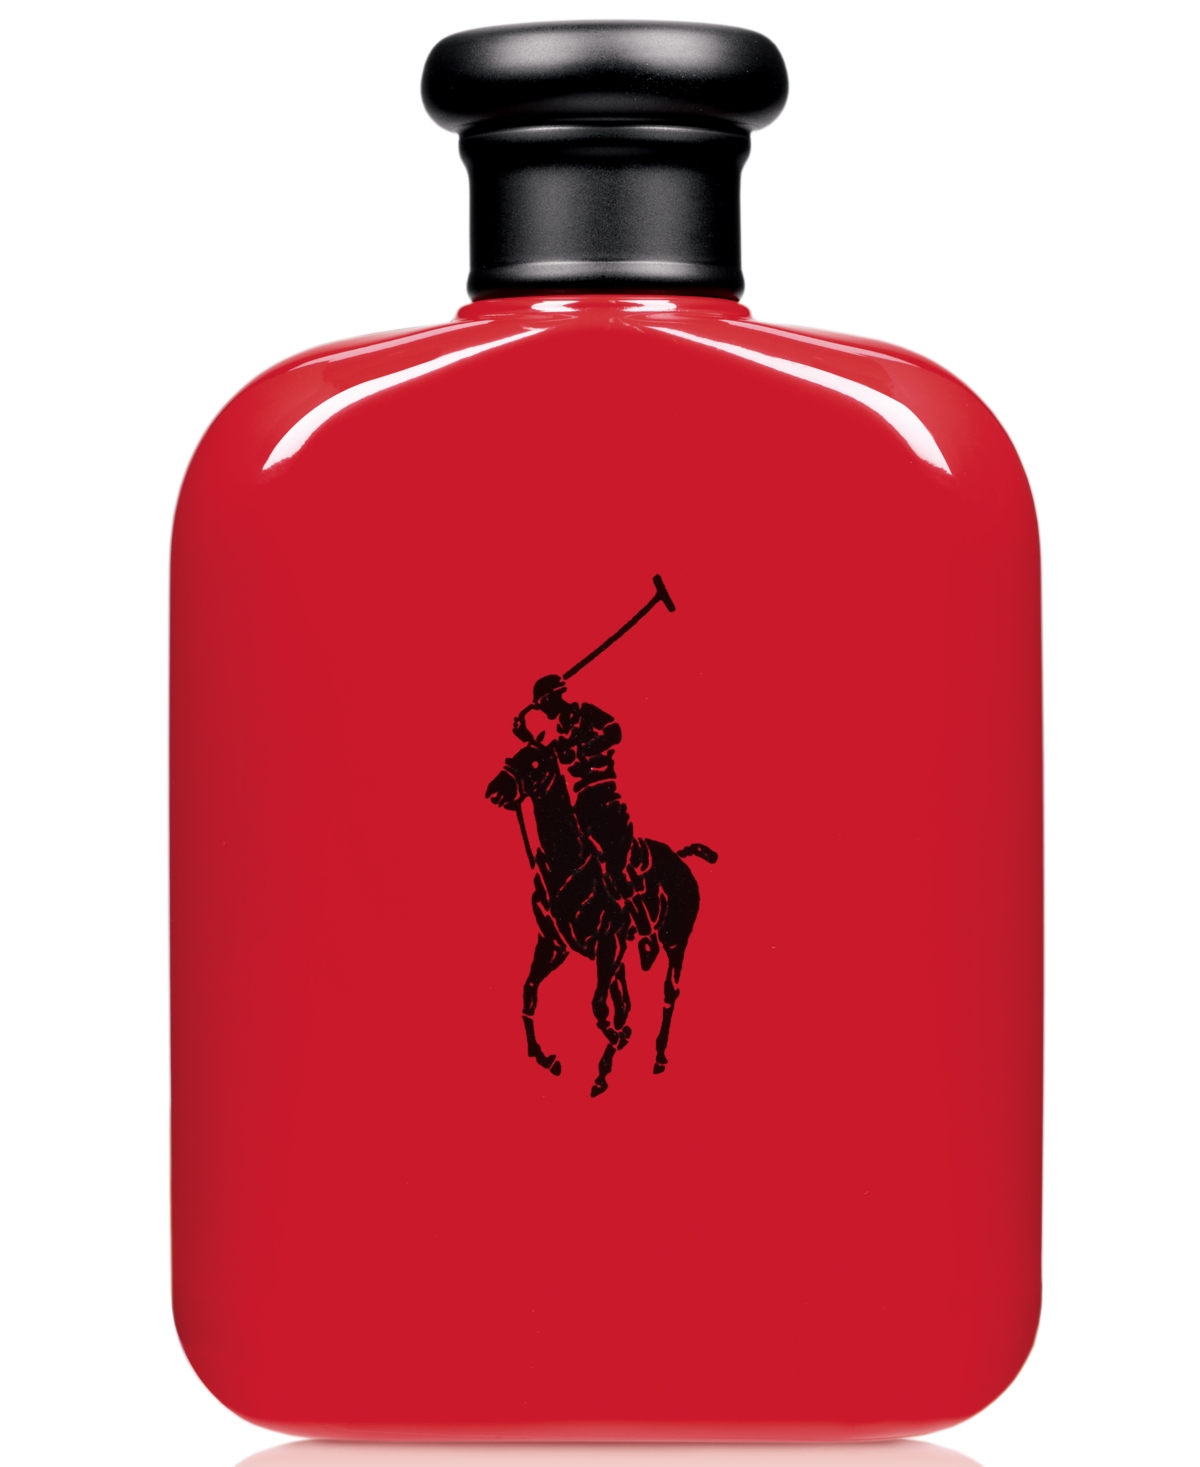 Ralph Lauren Polo Red Eau de Toilette Spray, 6.7 oz & Reviews 